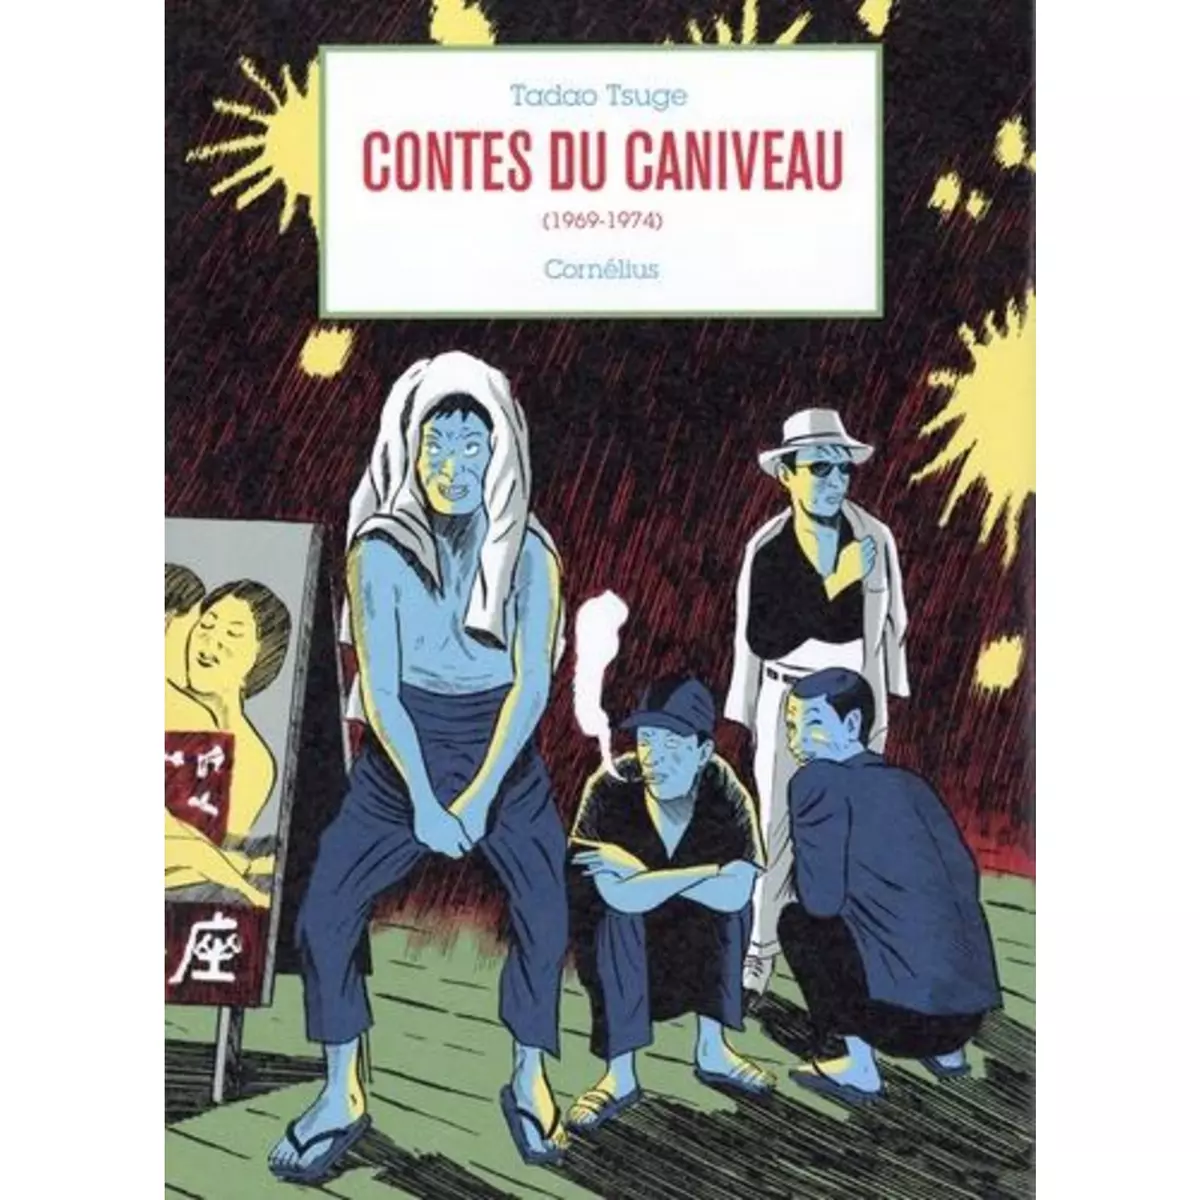  CONTES DU CANIVEAU (1969-1974), Tsuge Tadao